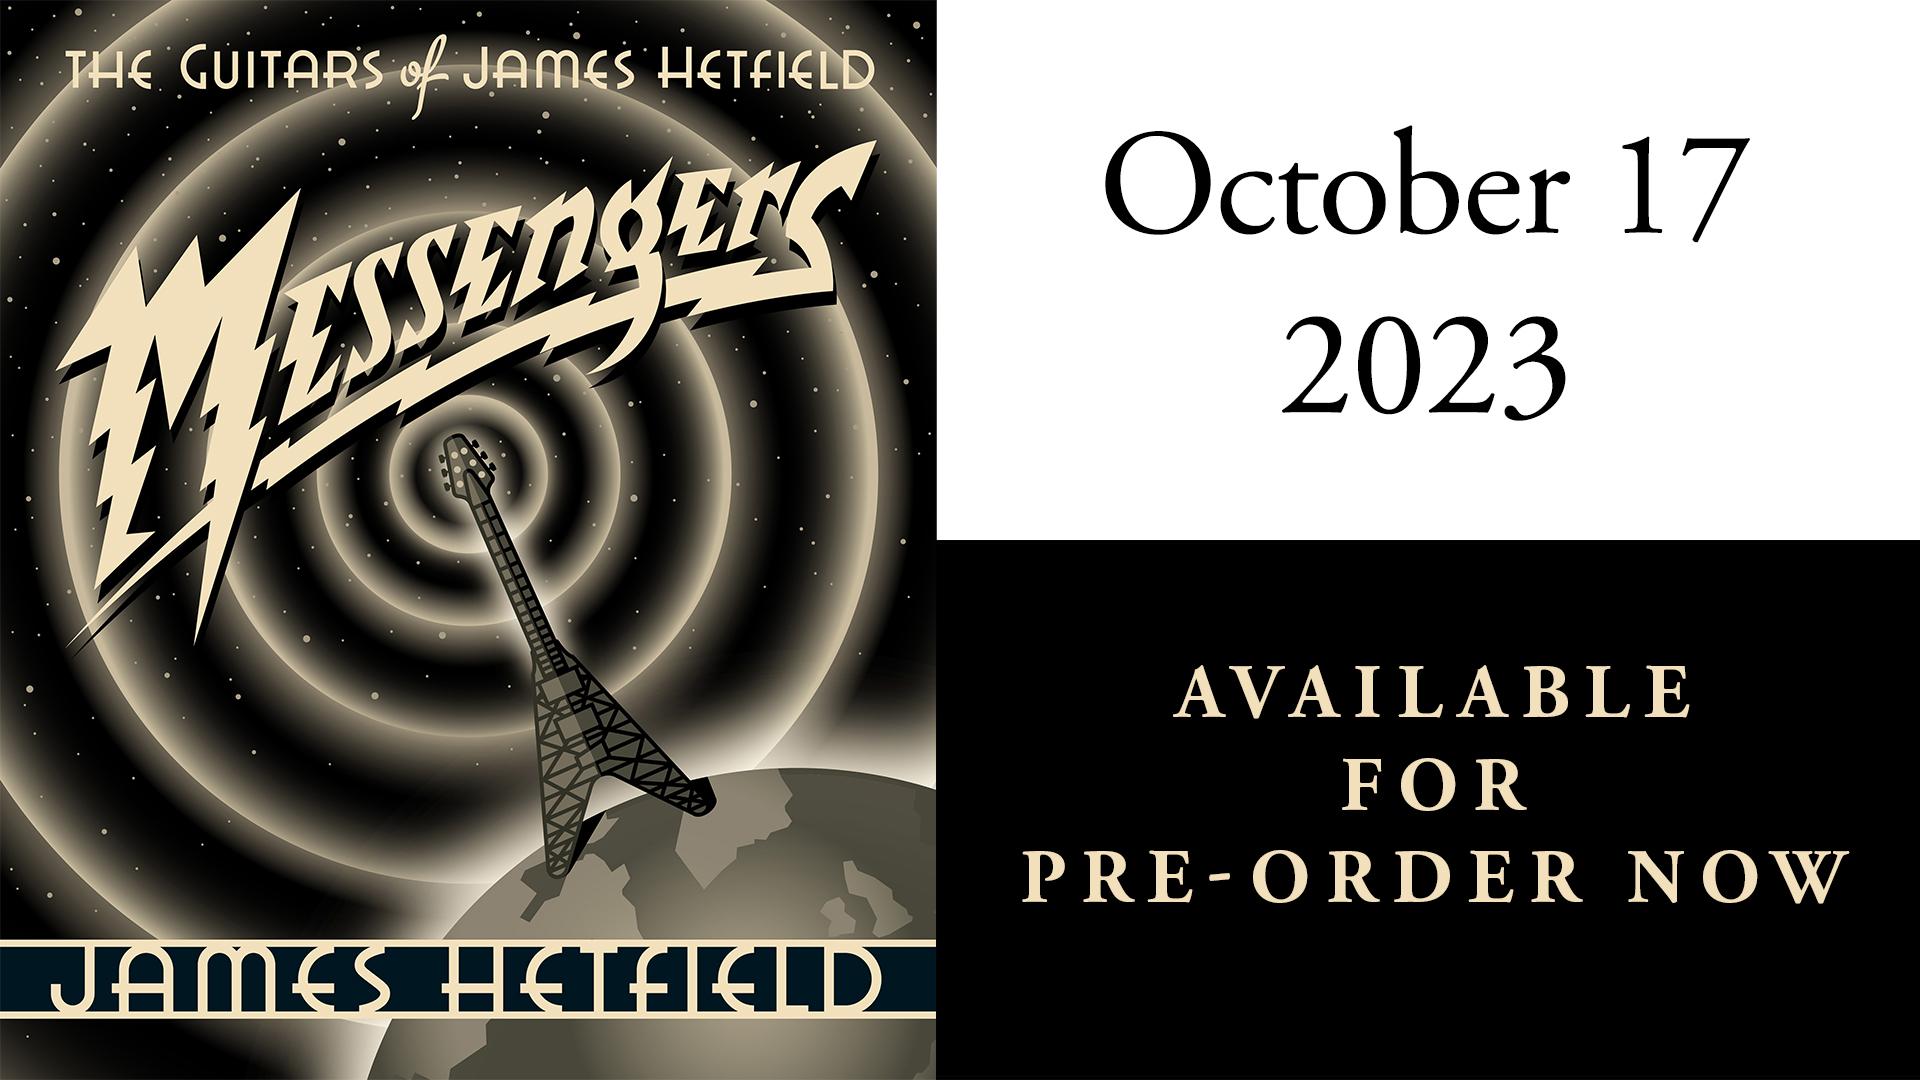 2023-03-28 Messengers: The Guitars of James Hetfield